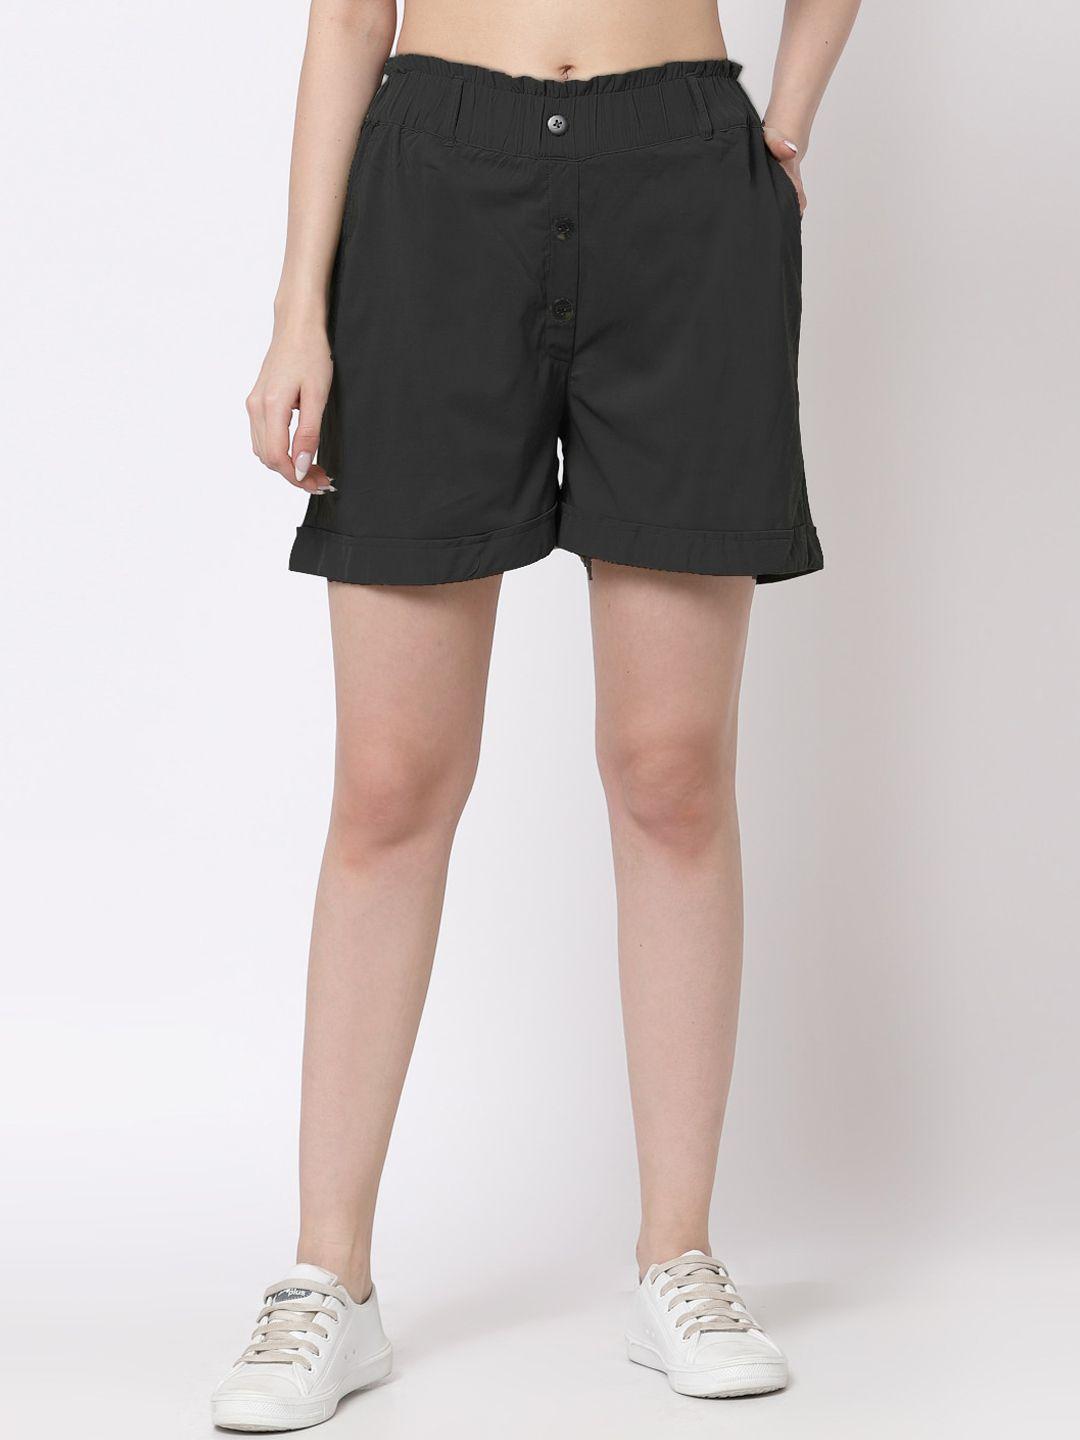 klotthe-women-black-solid-regular-shorts